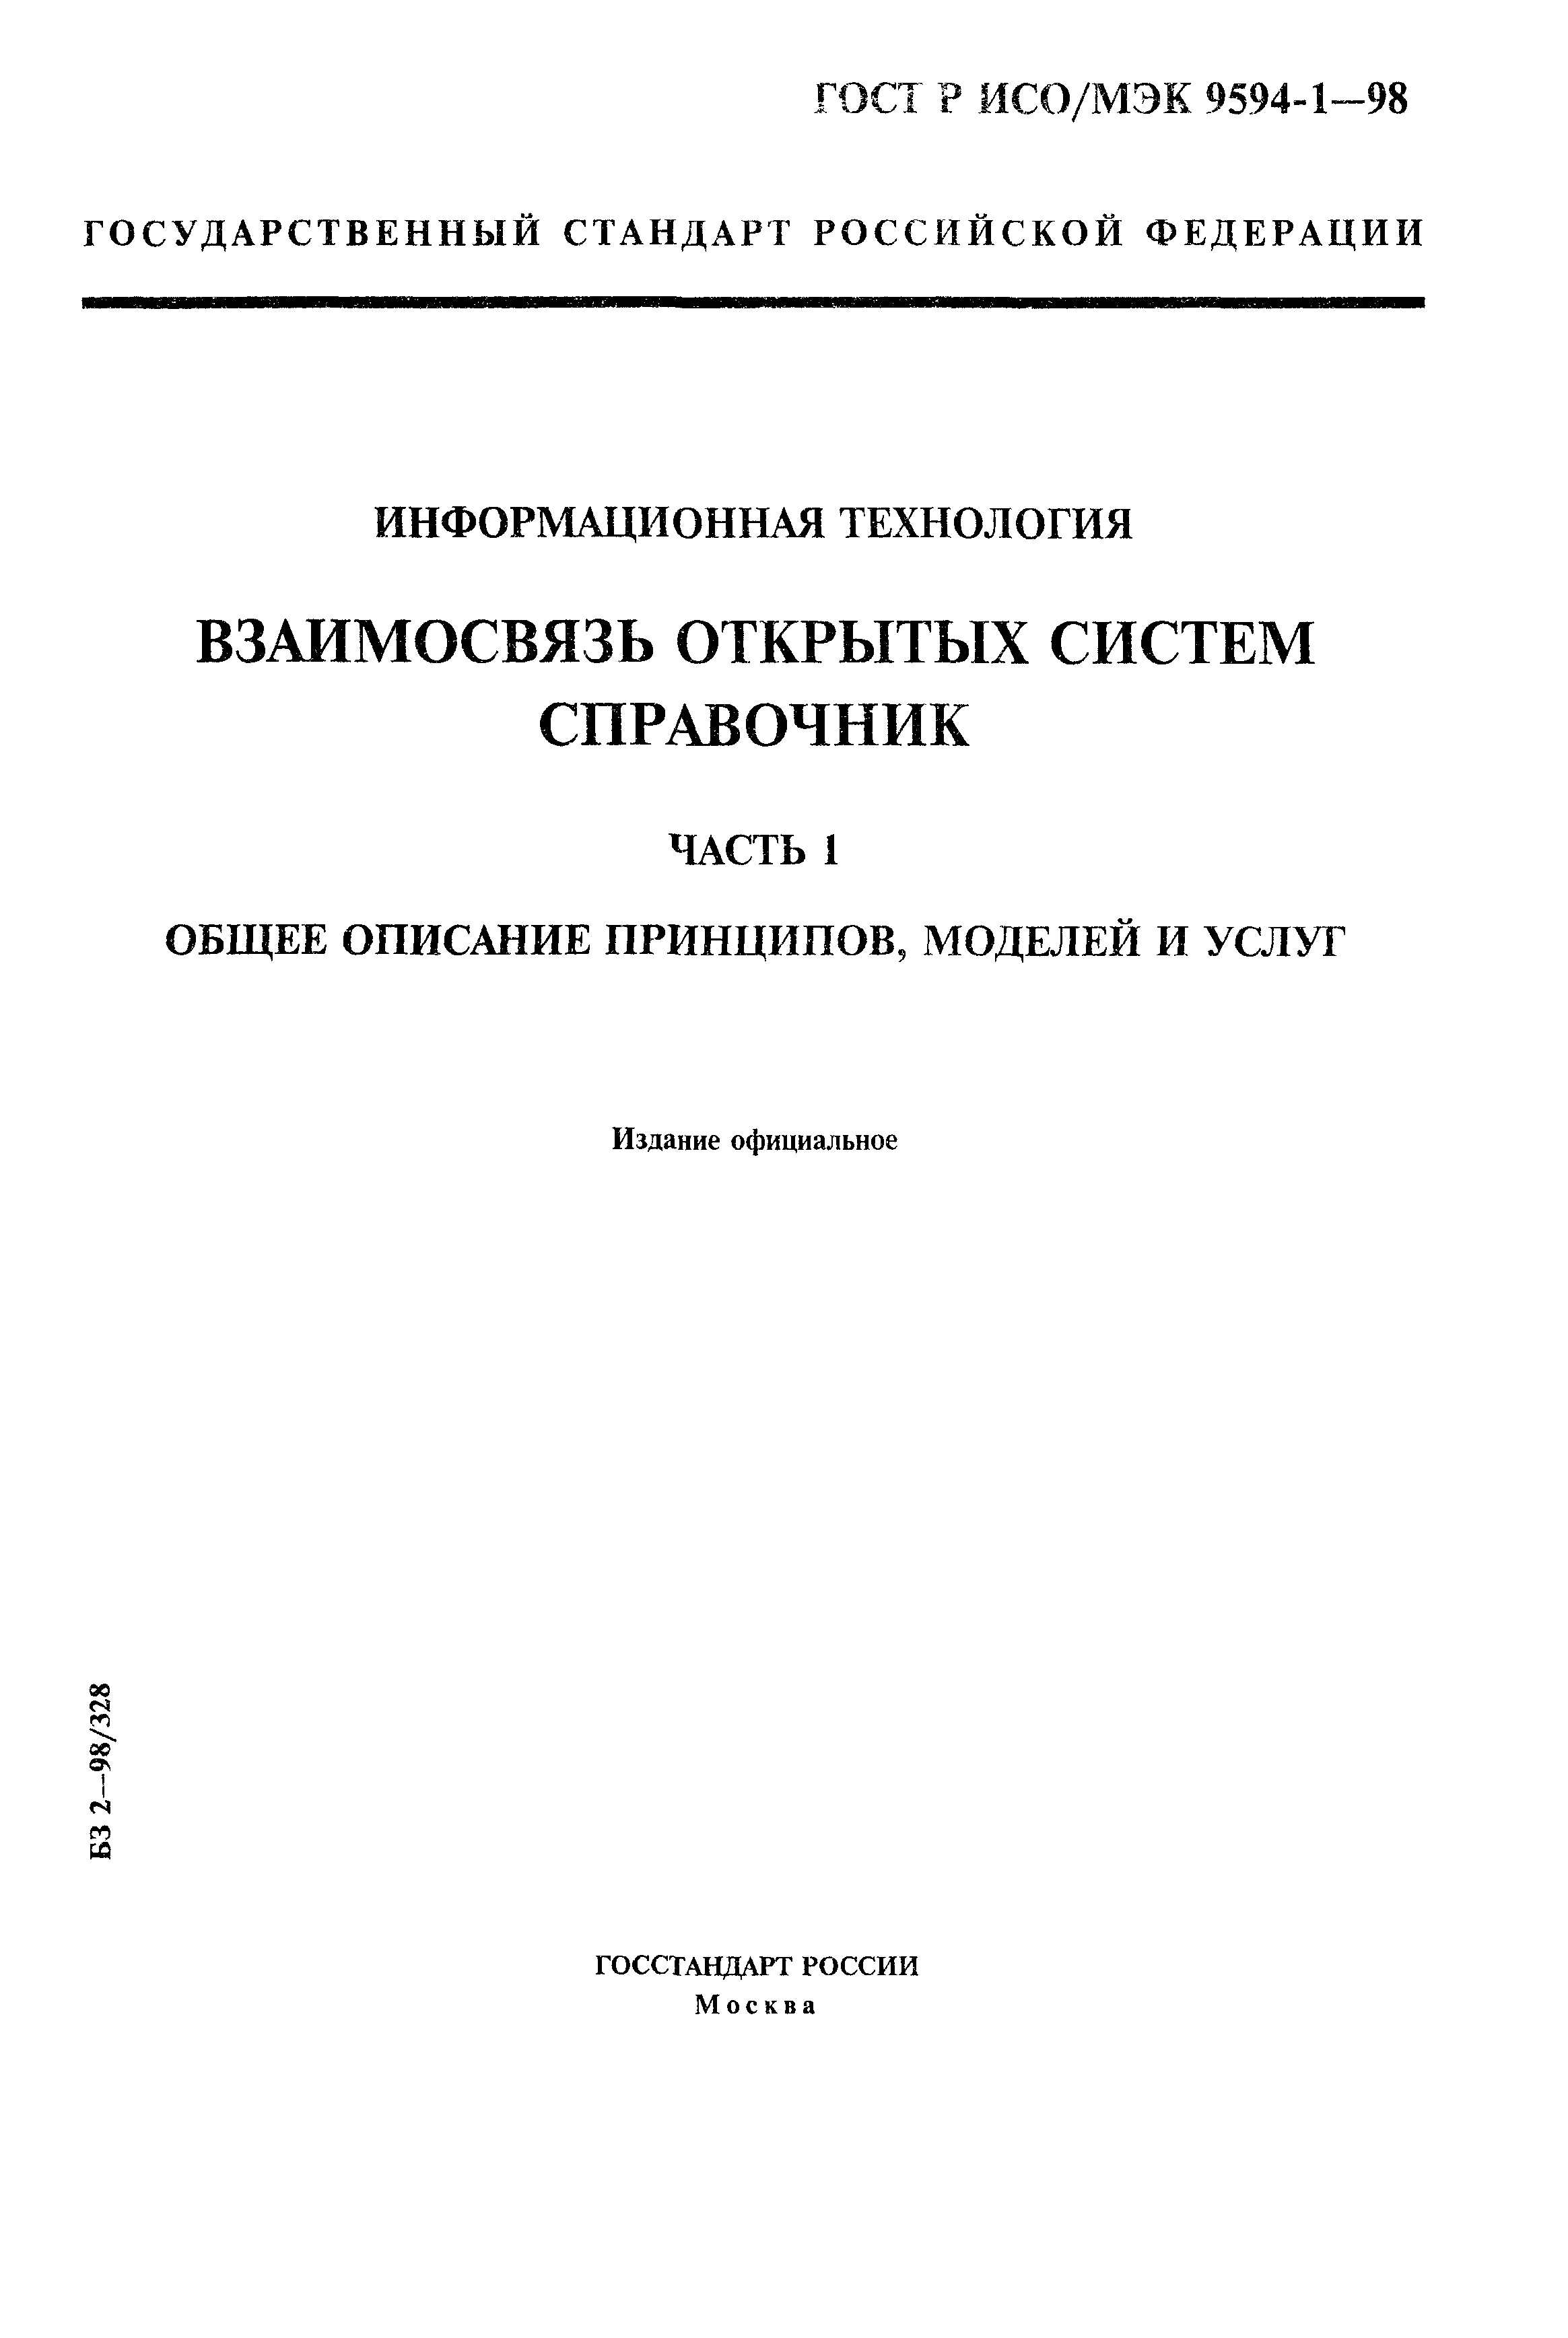 ГОСТ Р ИСО/МЭК 9594-1-98